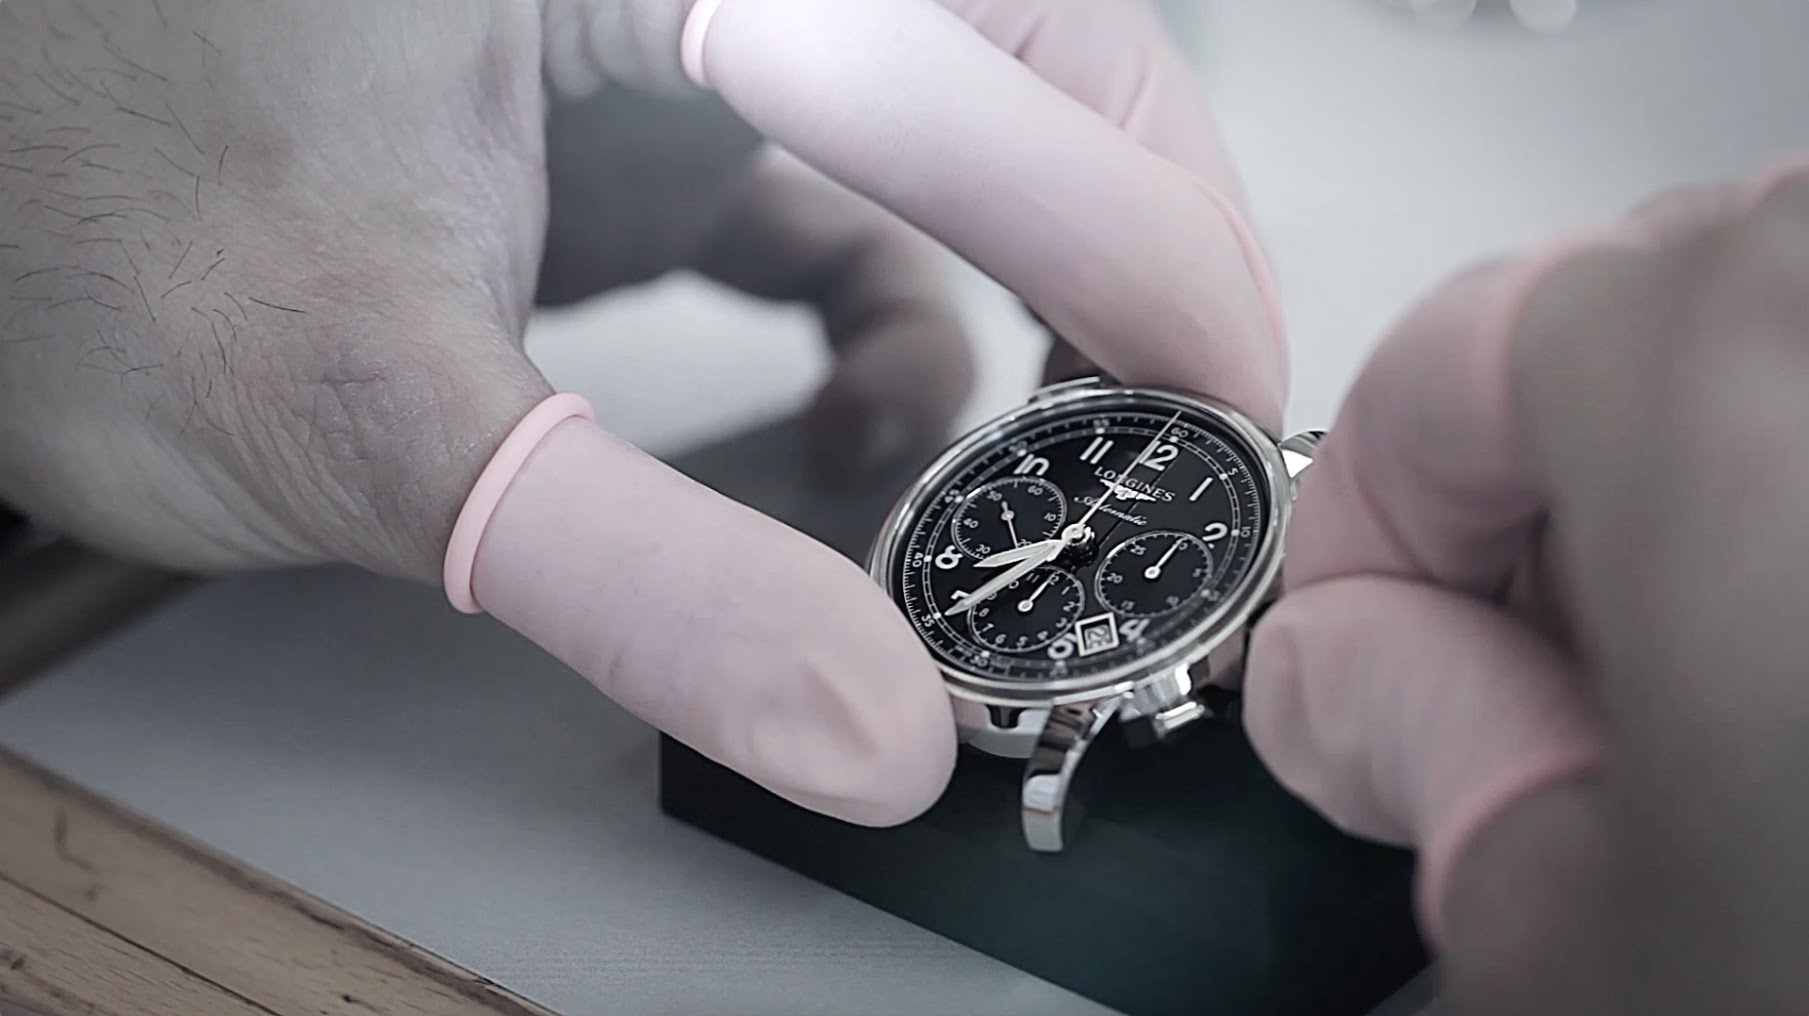 Quy định về bảo hành đồng hồ chính hãng Longines theo chuẩn quốc tế